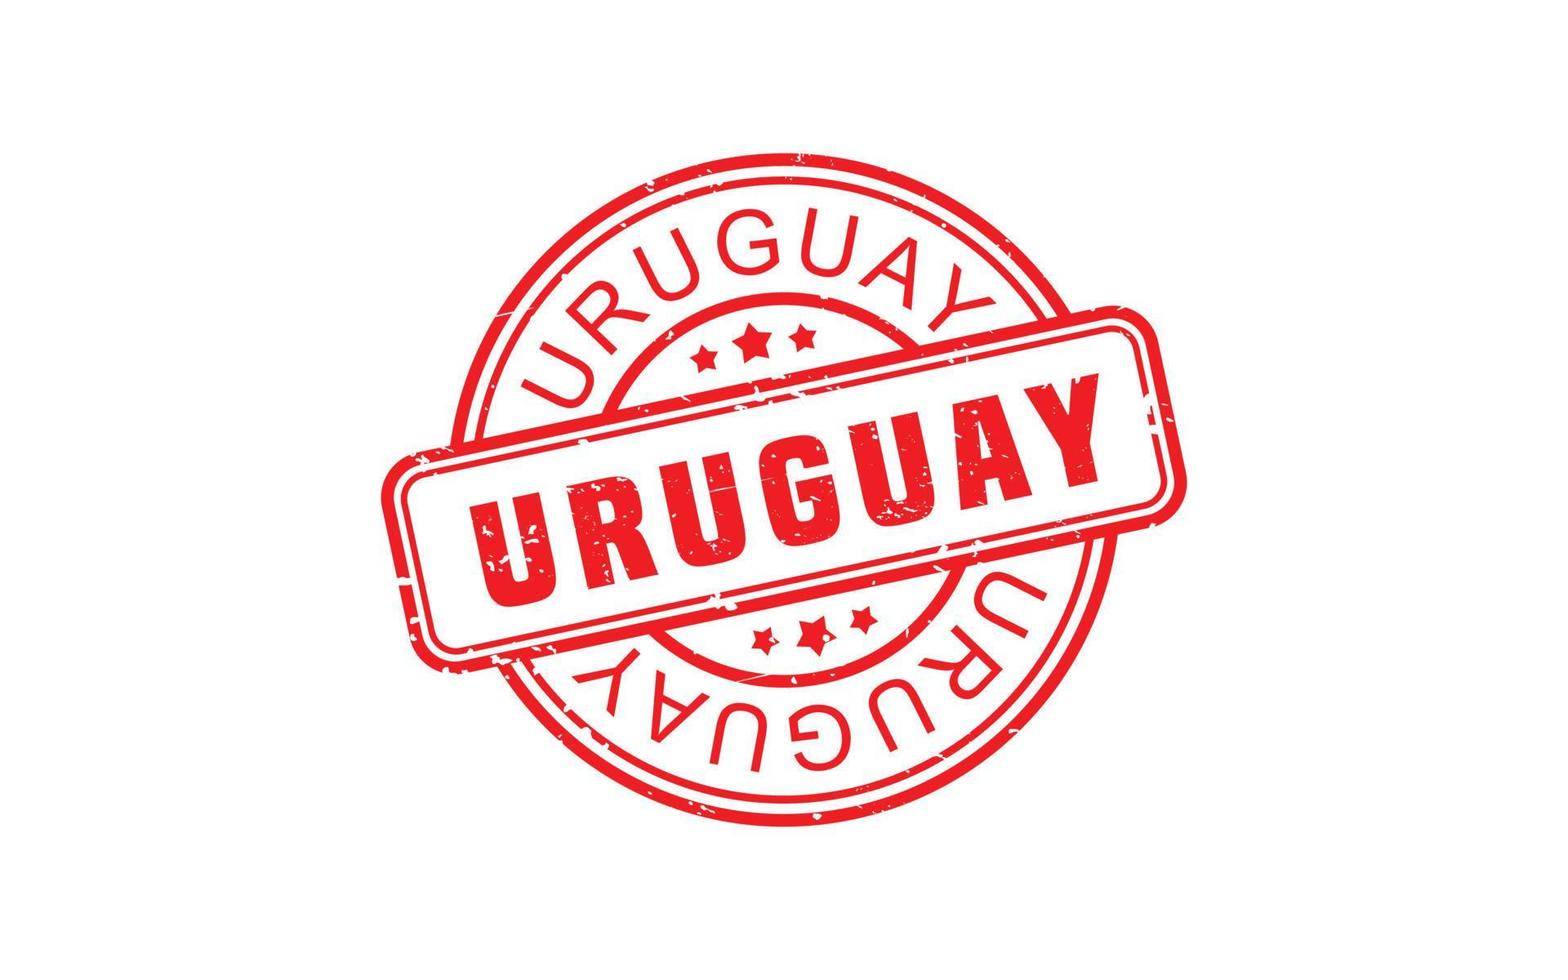 Uruguay sello caucho con grunge estilo en blanco antecedentes vector